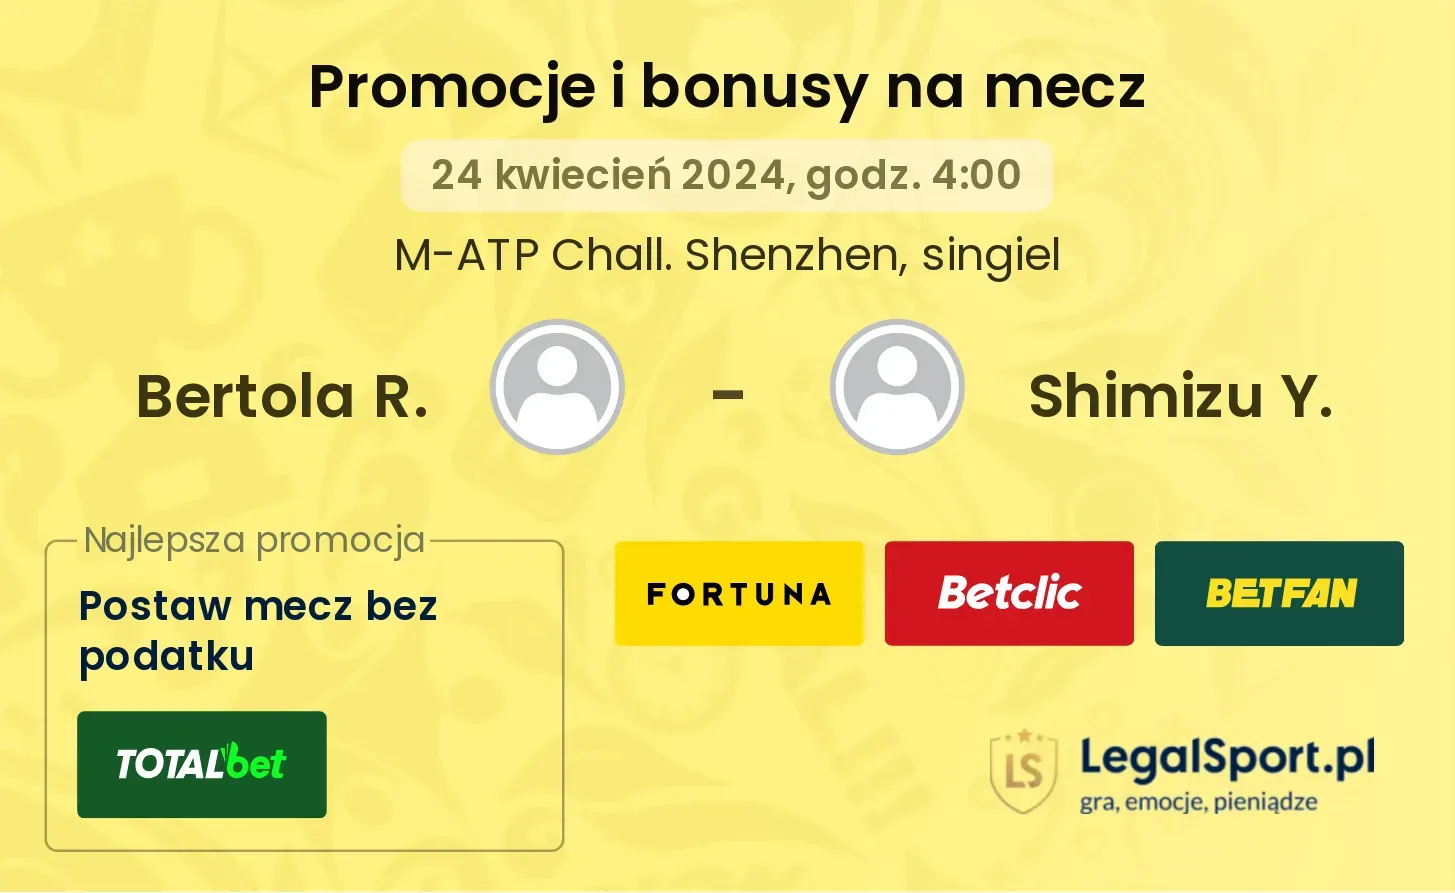 Bertola R. - Shimizu Y. promocje bonusy na mecz